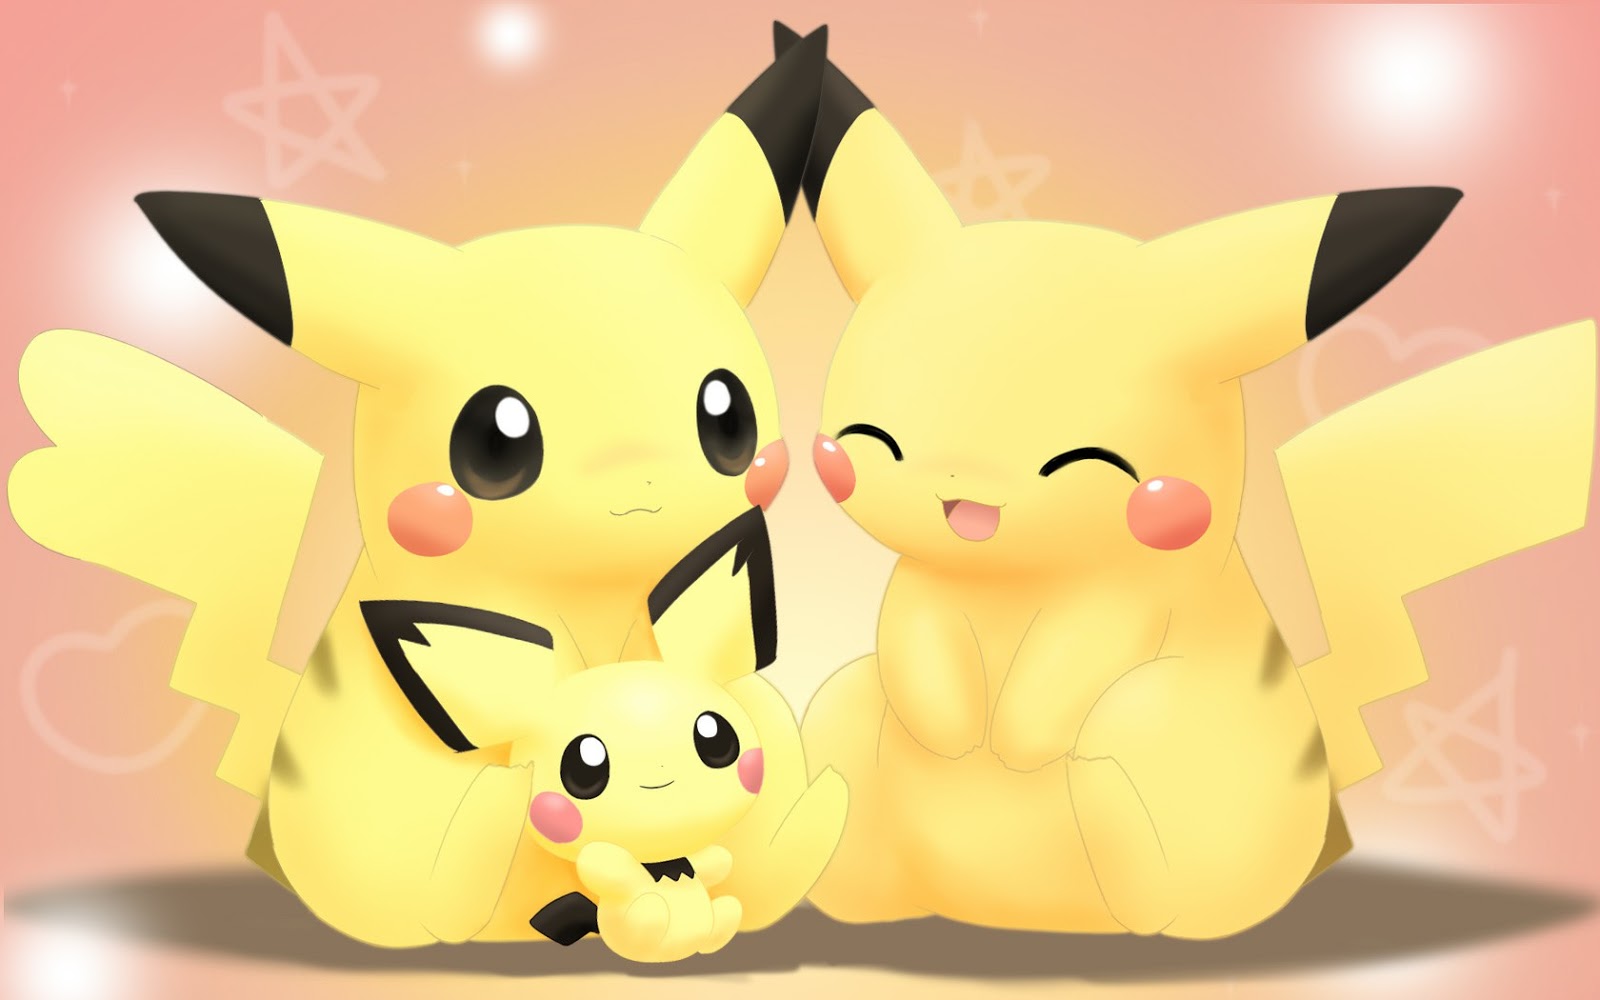 100 Hình Ảnh Pikachu Cute Dễ Thương Đẹp Nhất Hiện Nay